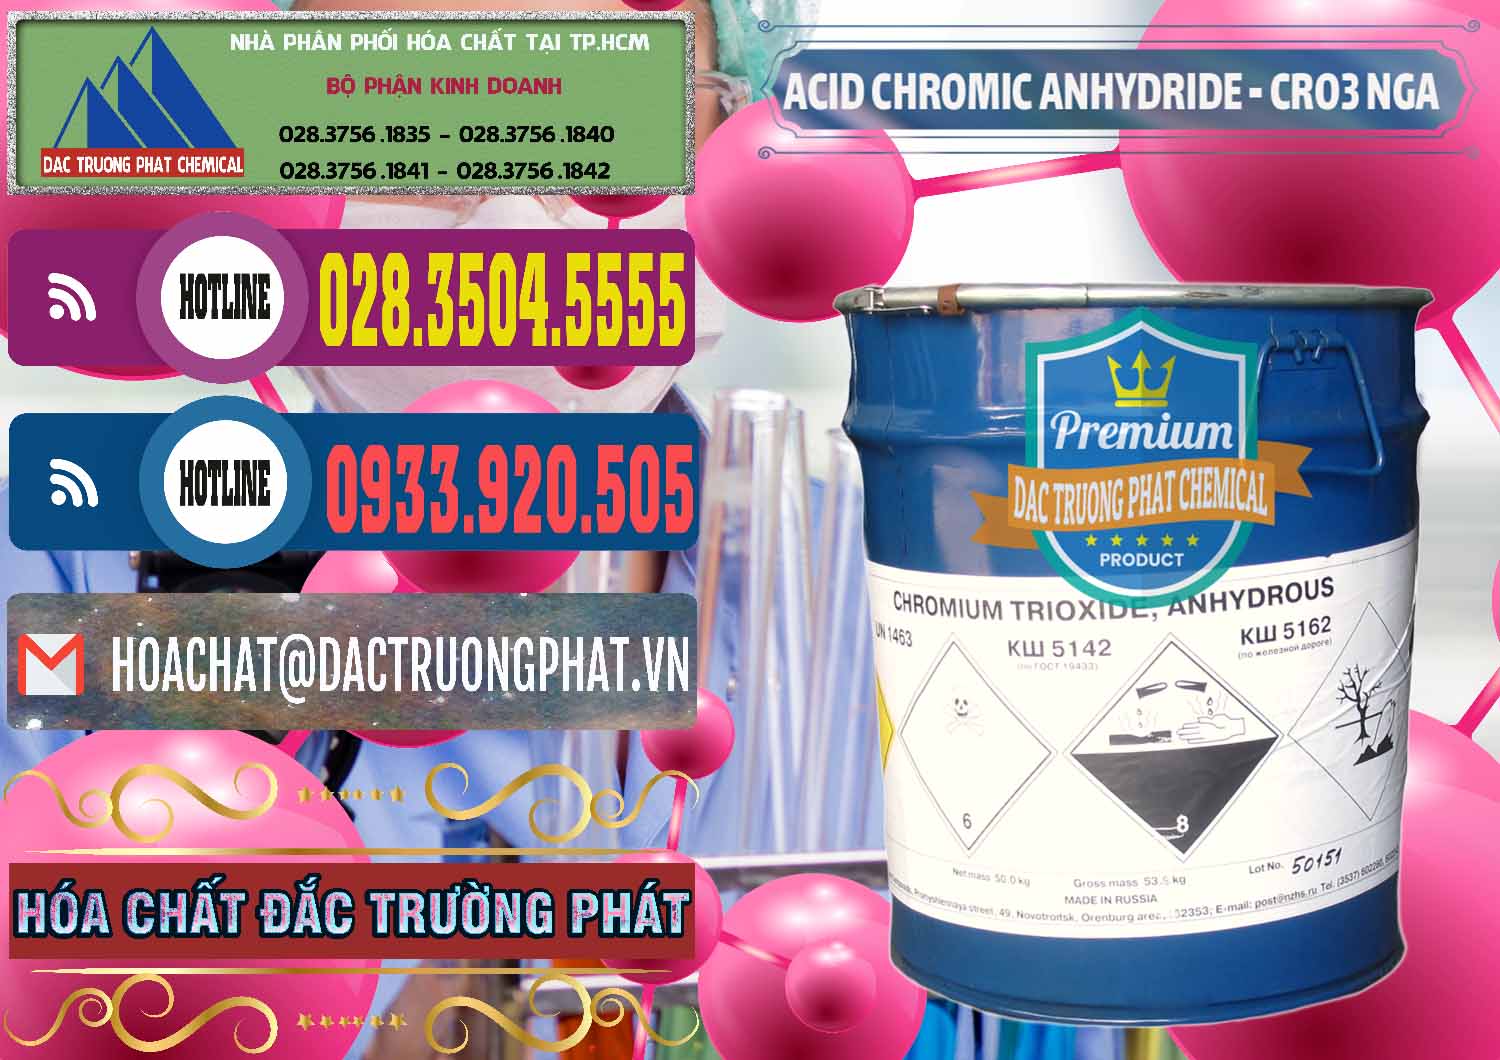 Cung ứng _ bán Acid Chromic Anhydride - Cromic CRO3 Nga Russia - 0006 - Đơn vị kinh doanh _ phân phối hóa chất tại TP.HCM - muabanhoachat.com.vn